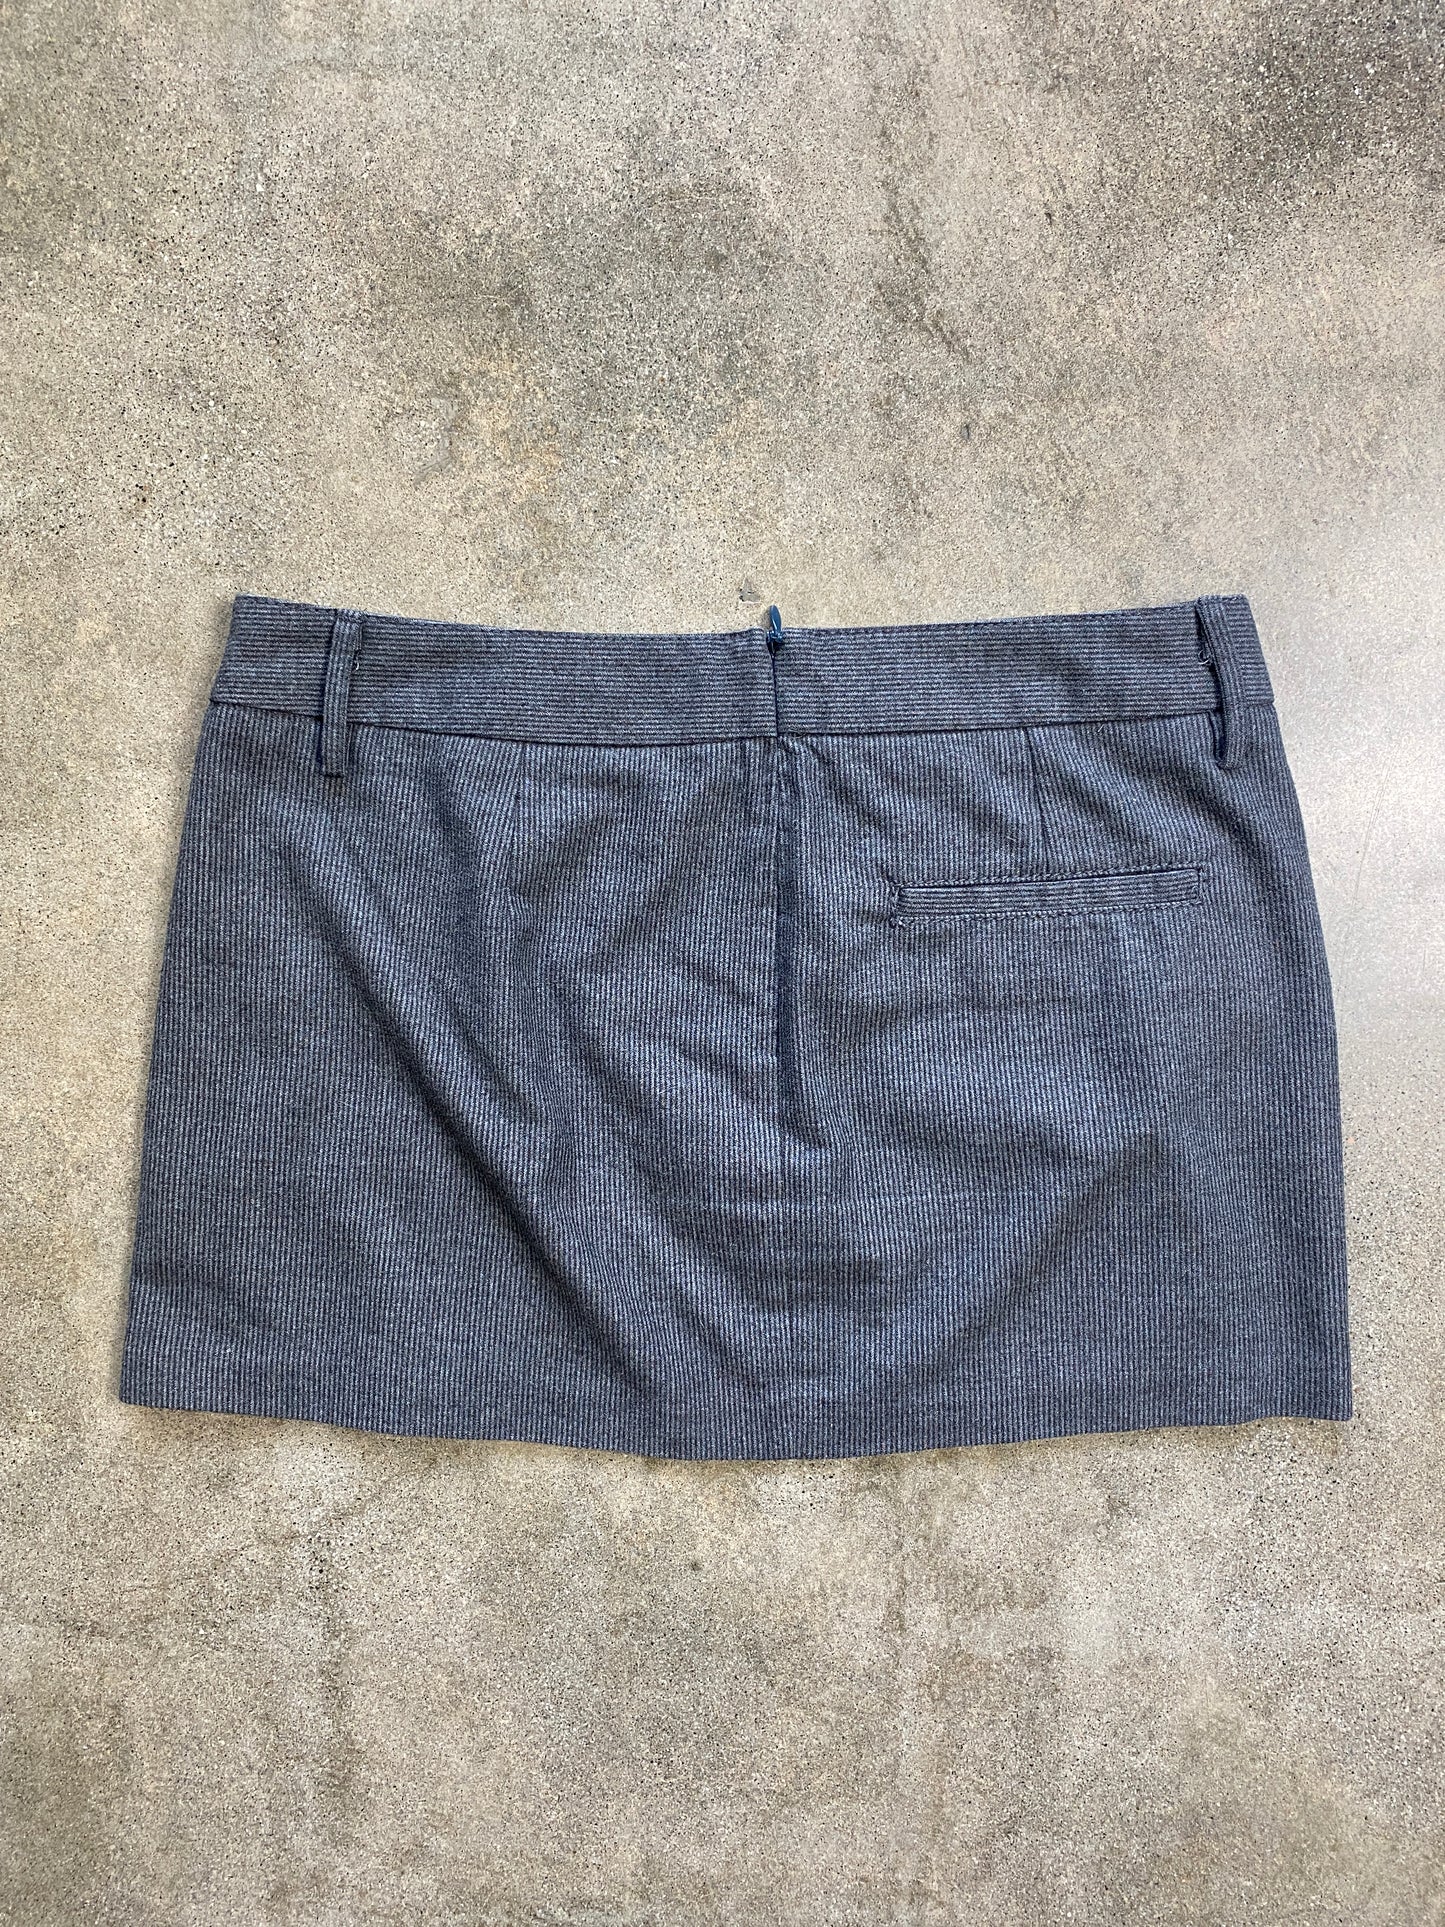 00's Gray Pinstripe Micro Mini Skirt